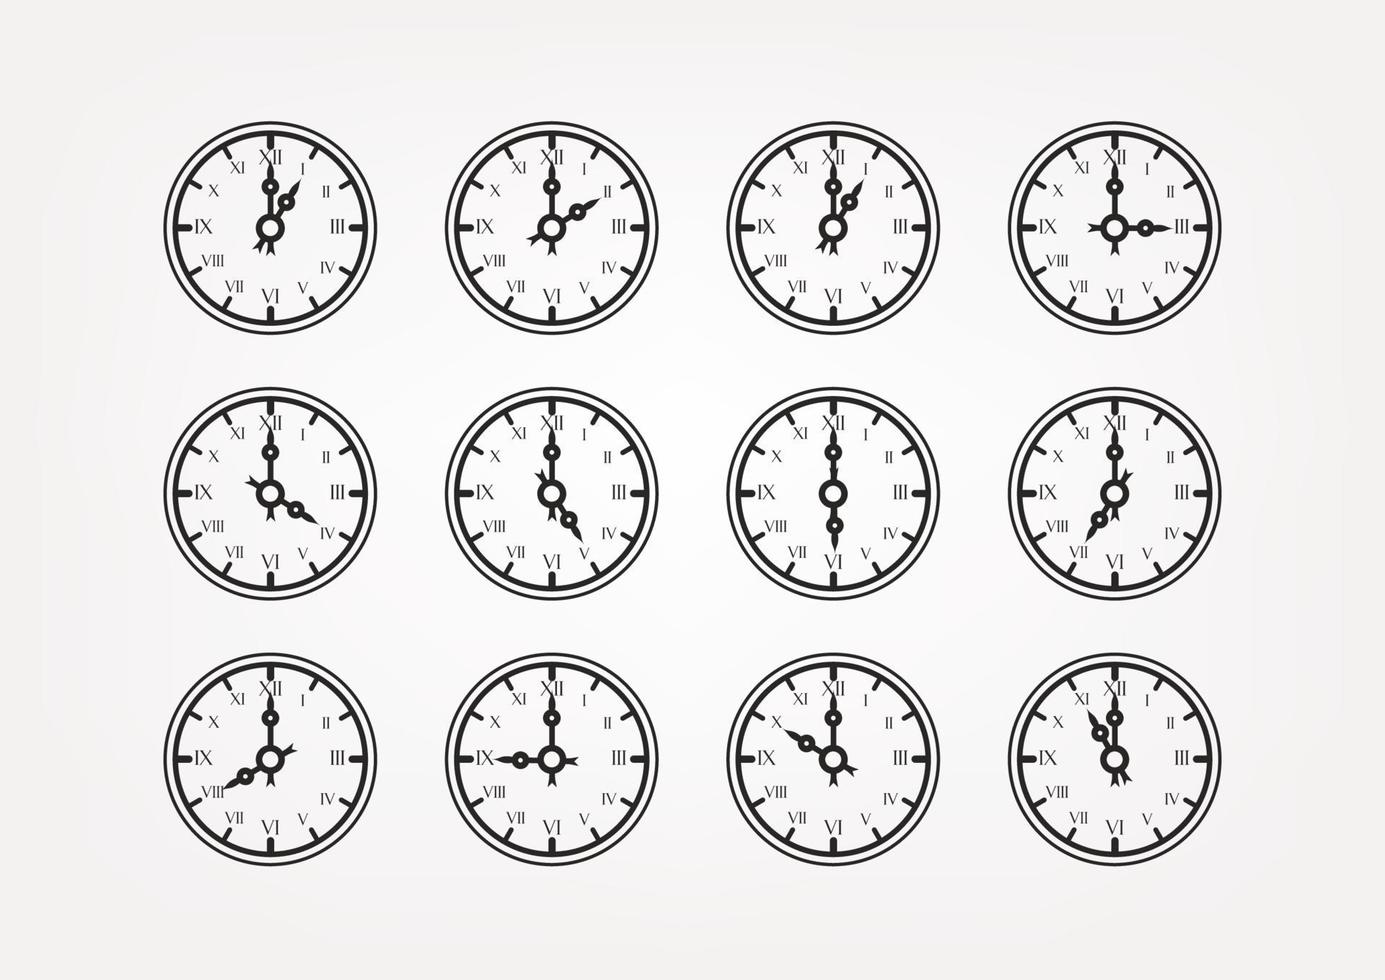 silhouettes de vecteur d'horloge de style rétro avec position de flèches différentes